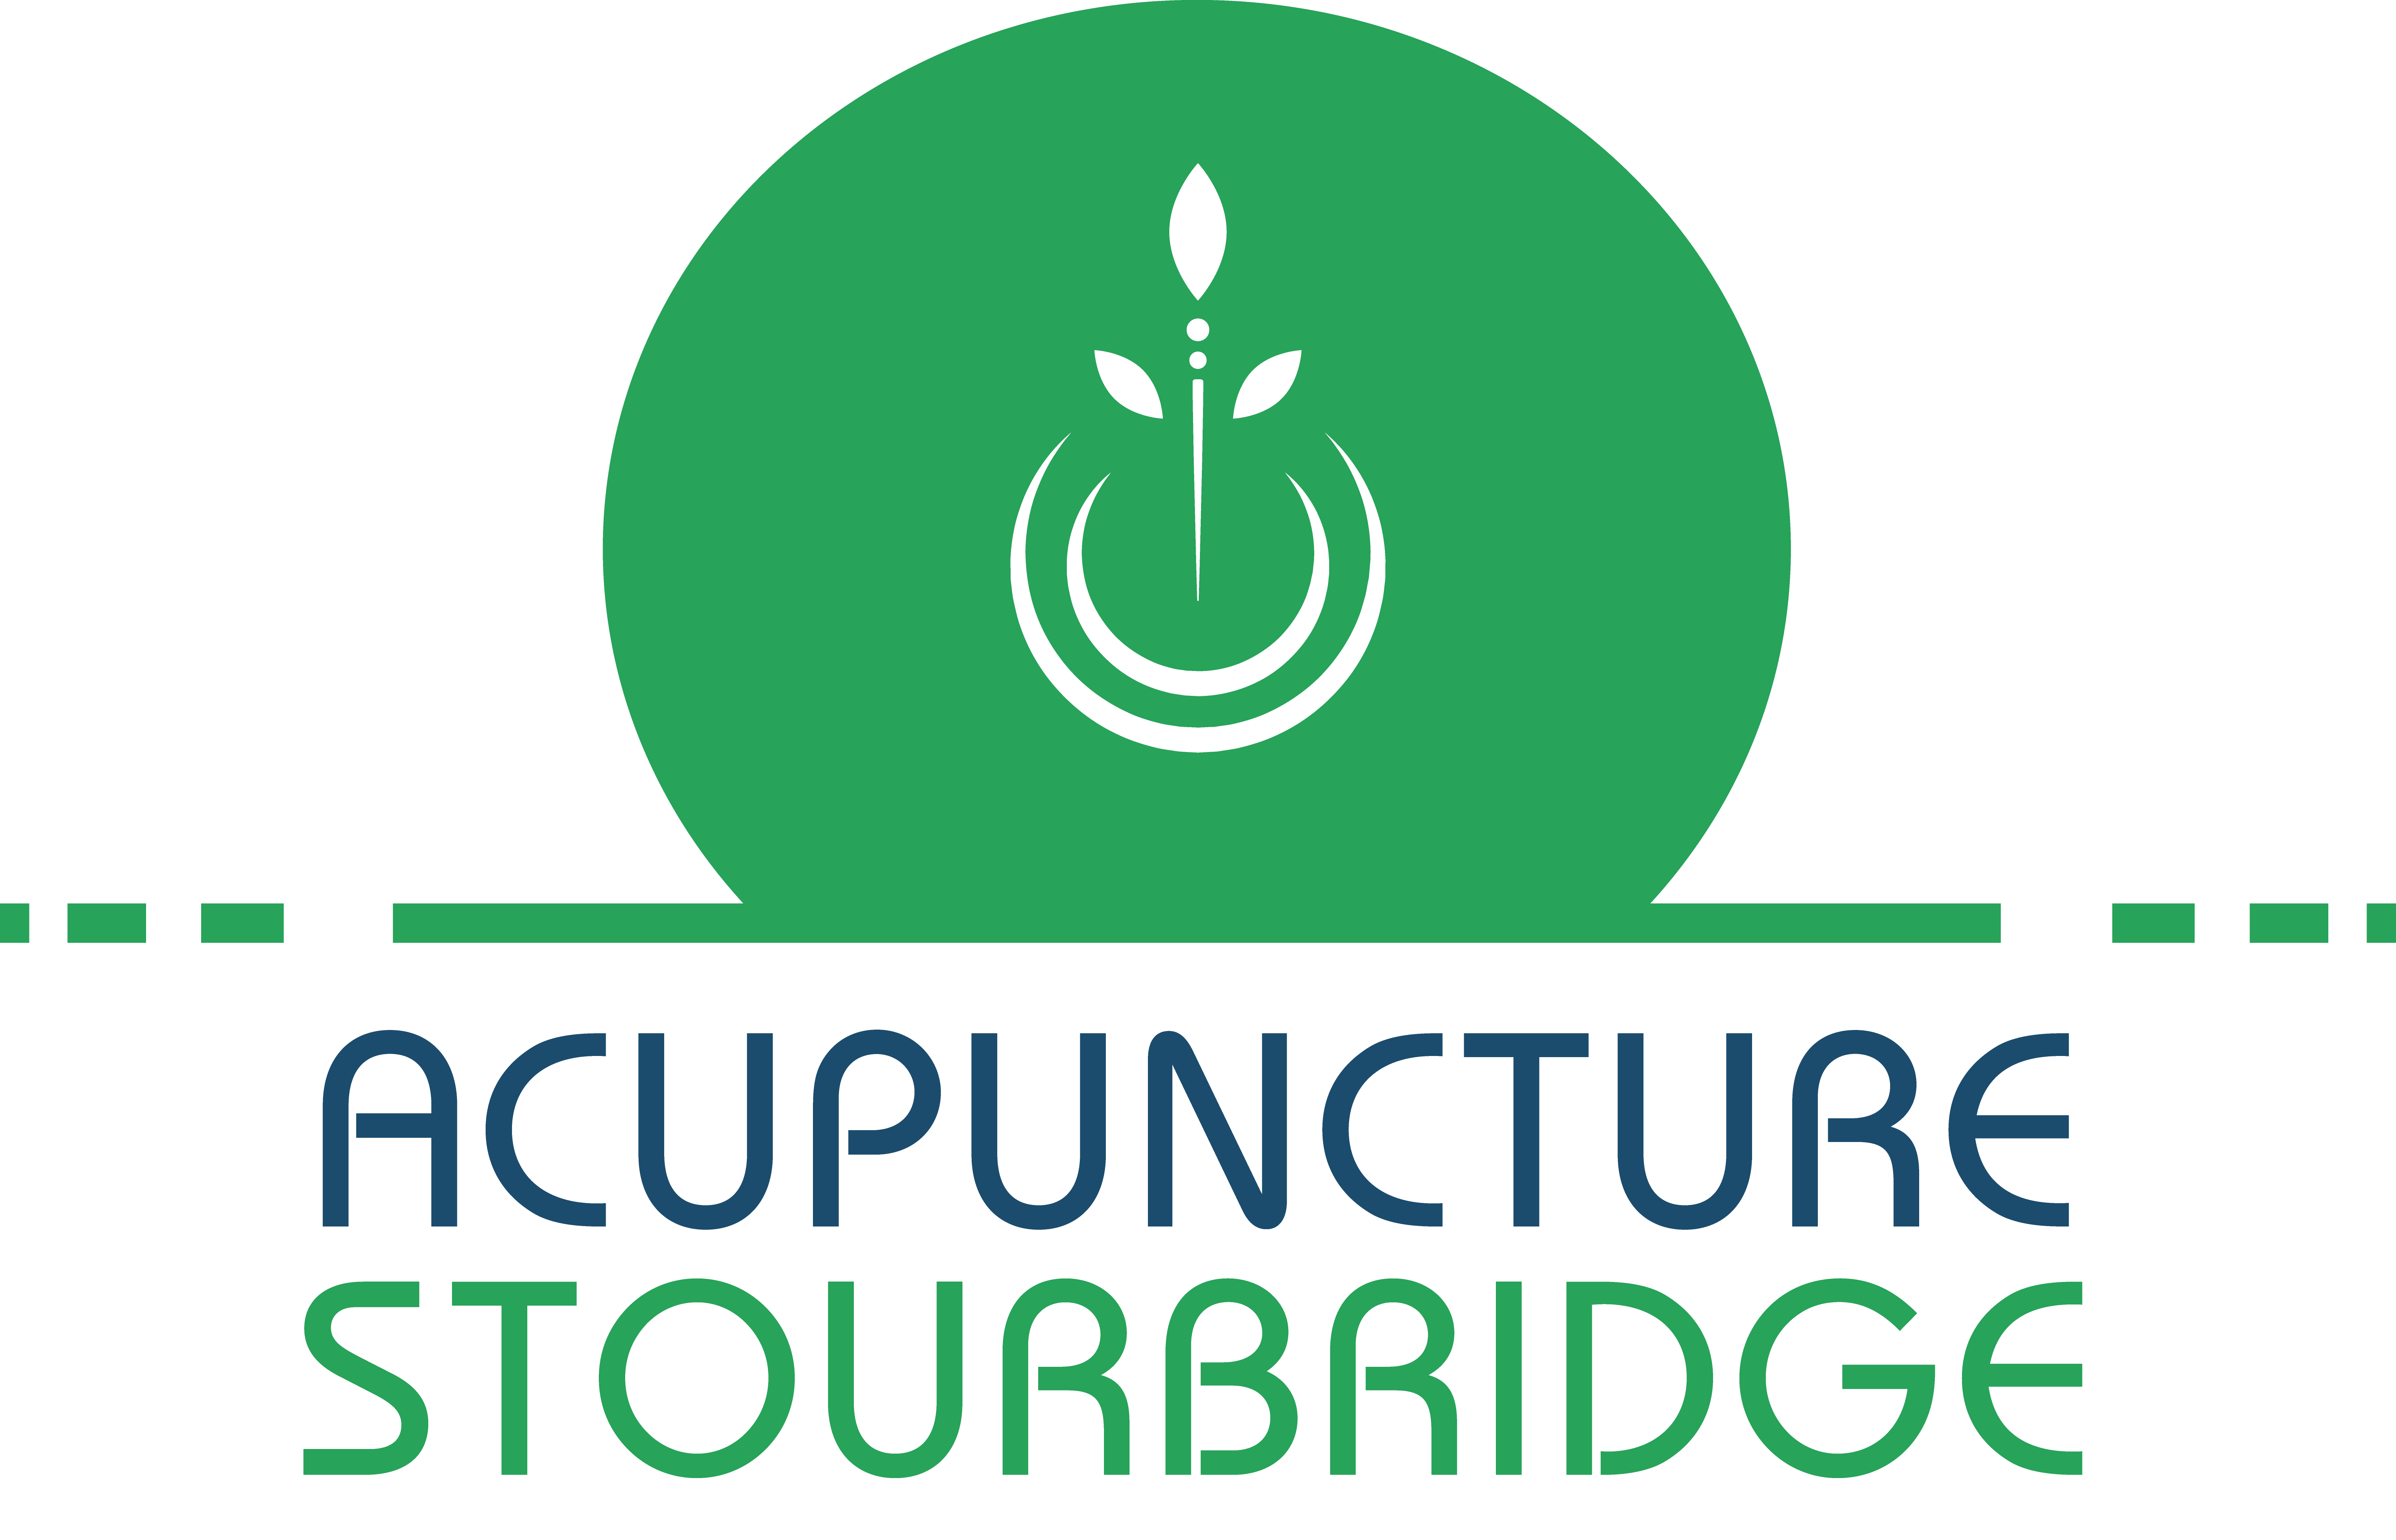 Stourbridge Acupuncture